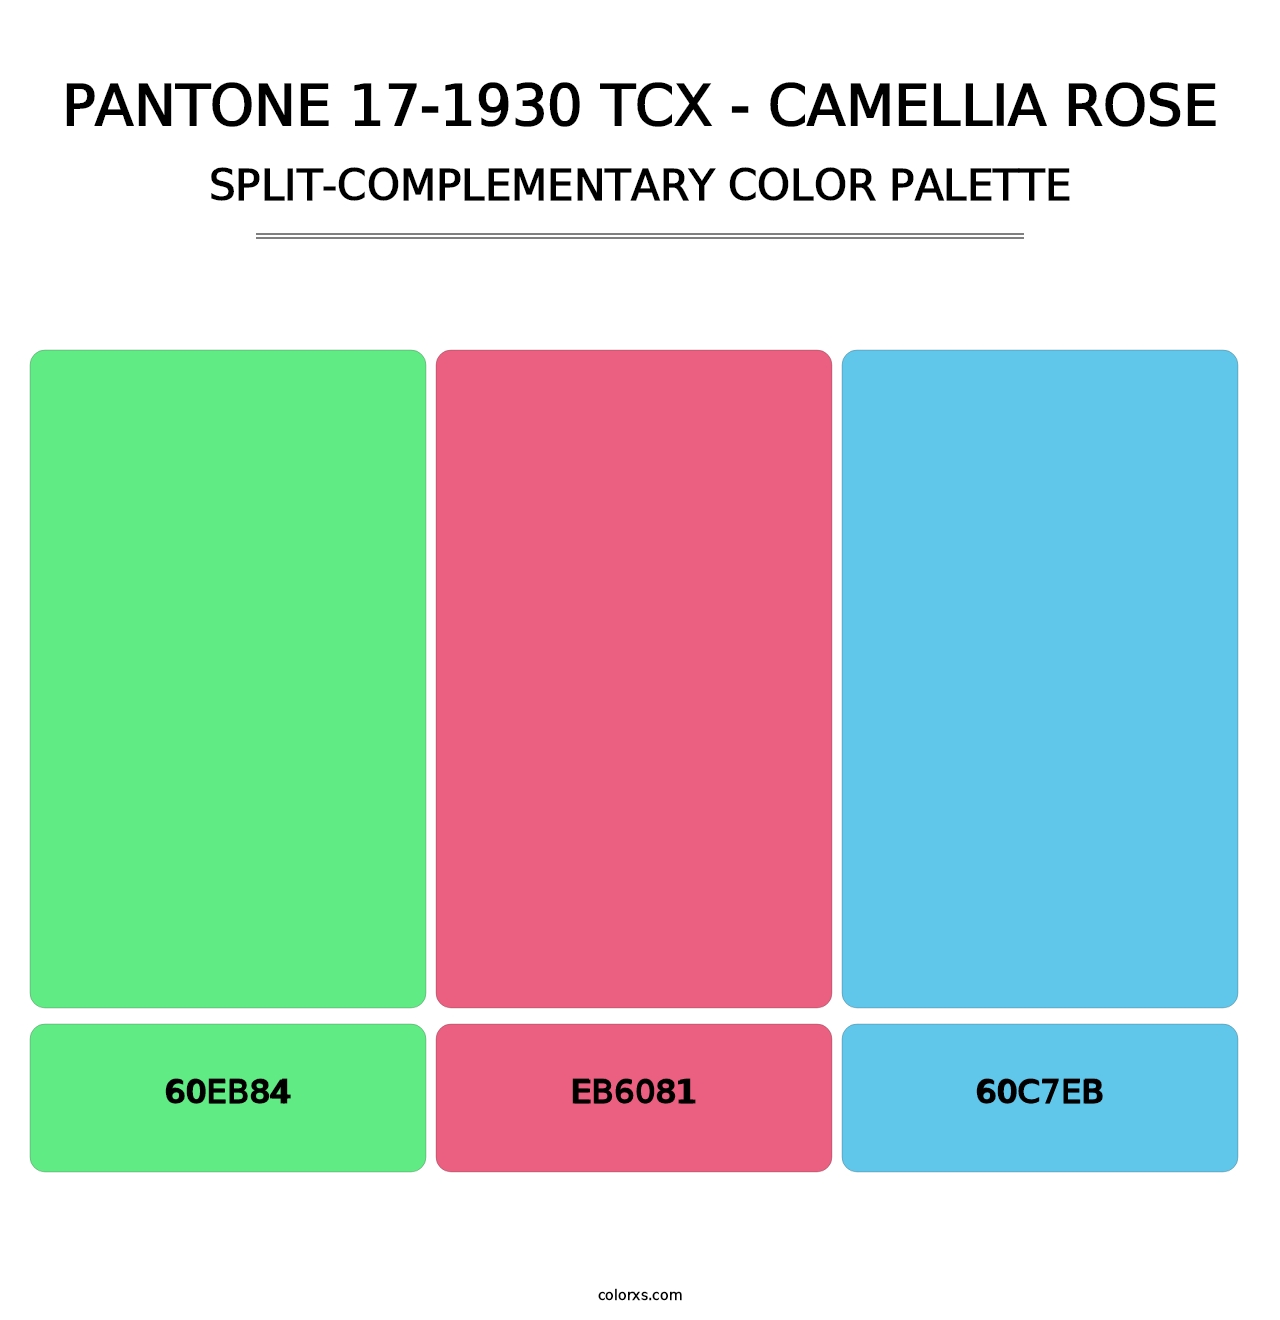 PANTONE 17-1930 TCX - Camellia Rose - Split-Complementary Color Palette